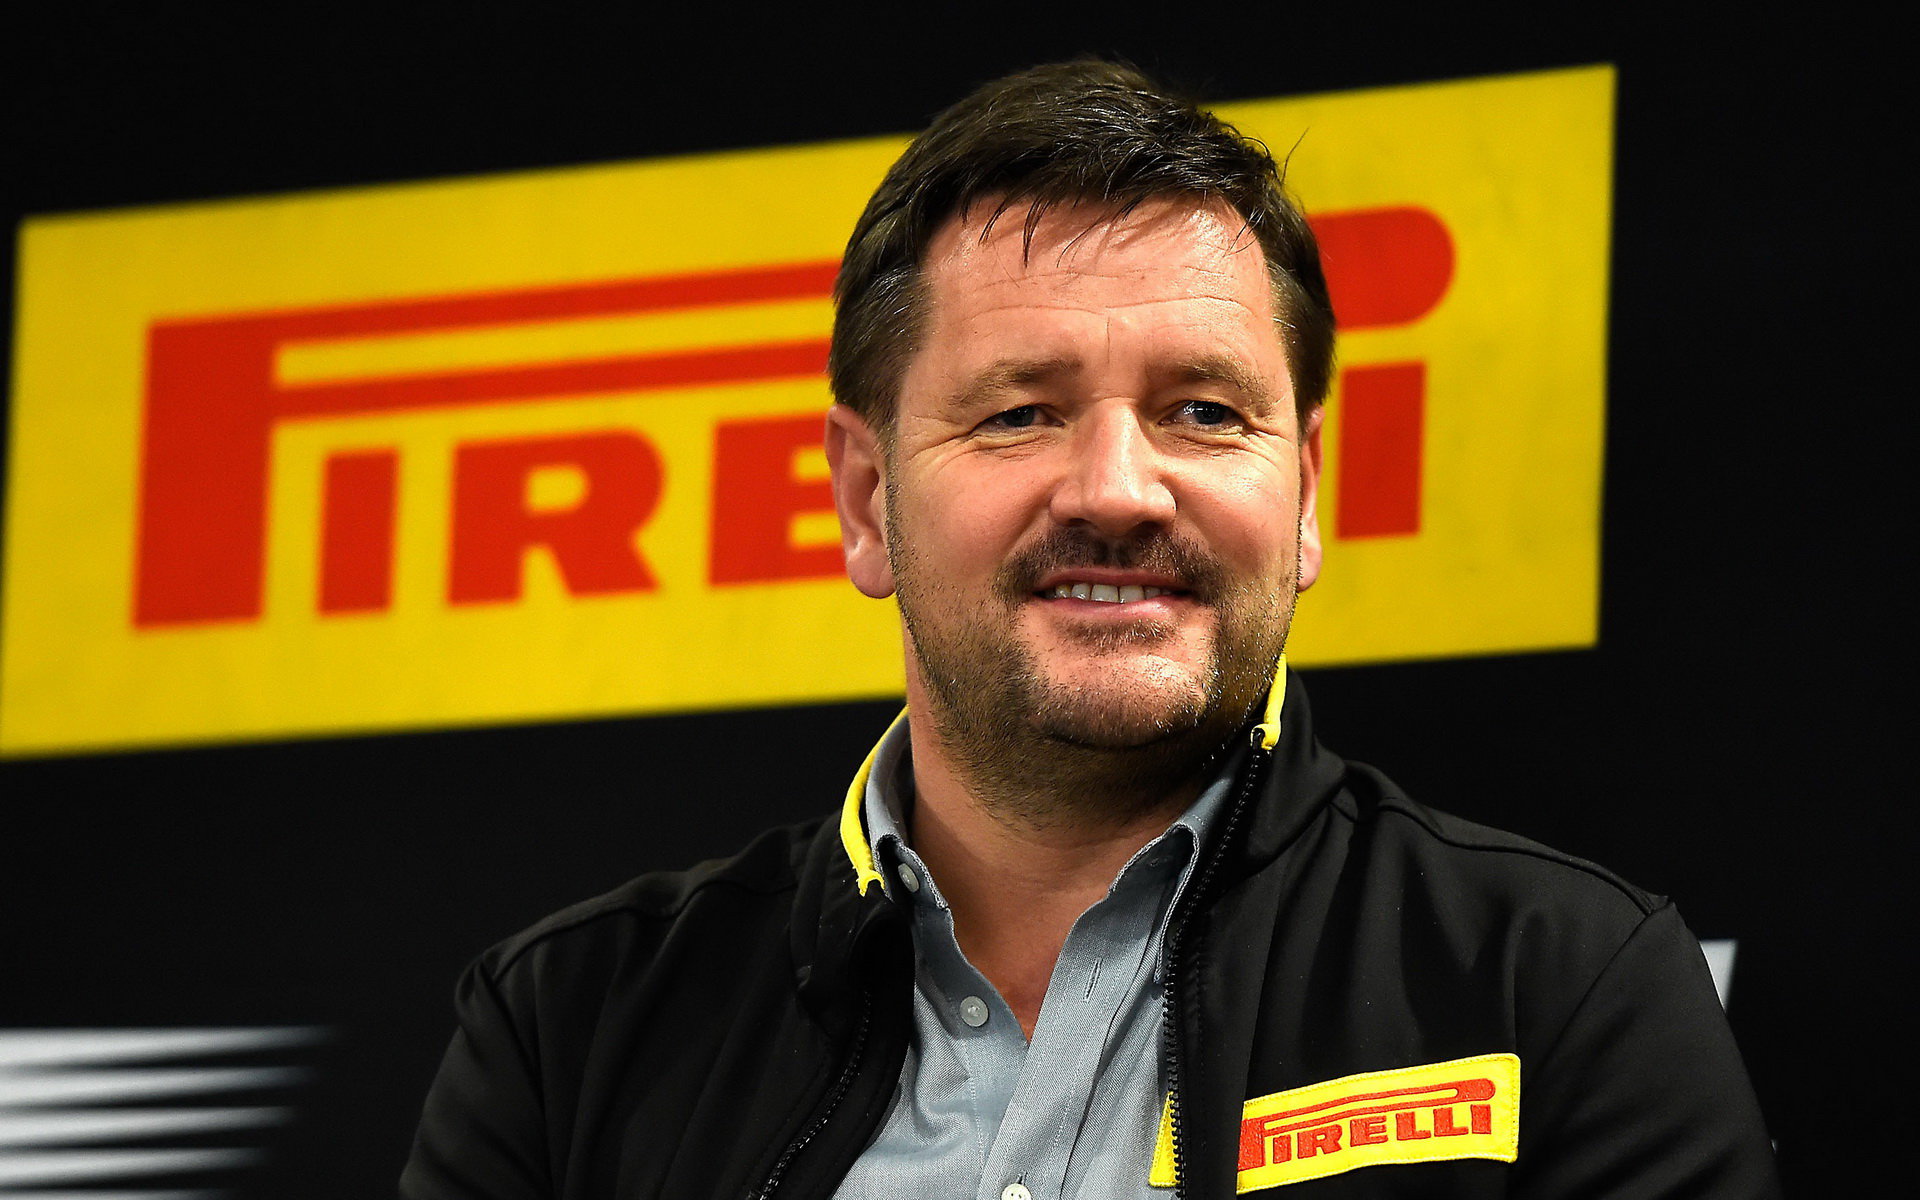 Sportovní šéf Pirelli, Paul Hembery